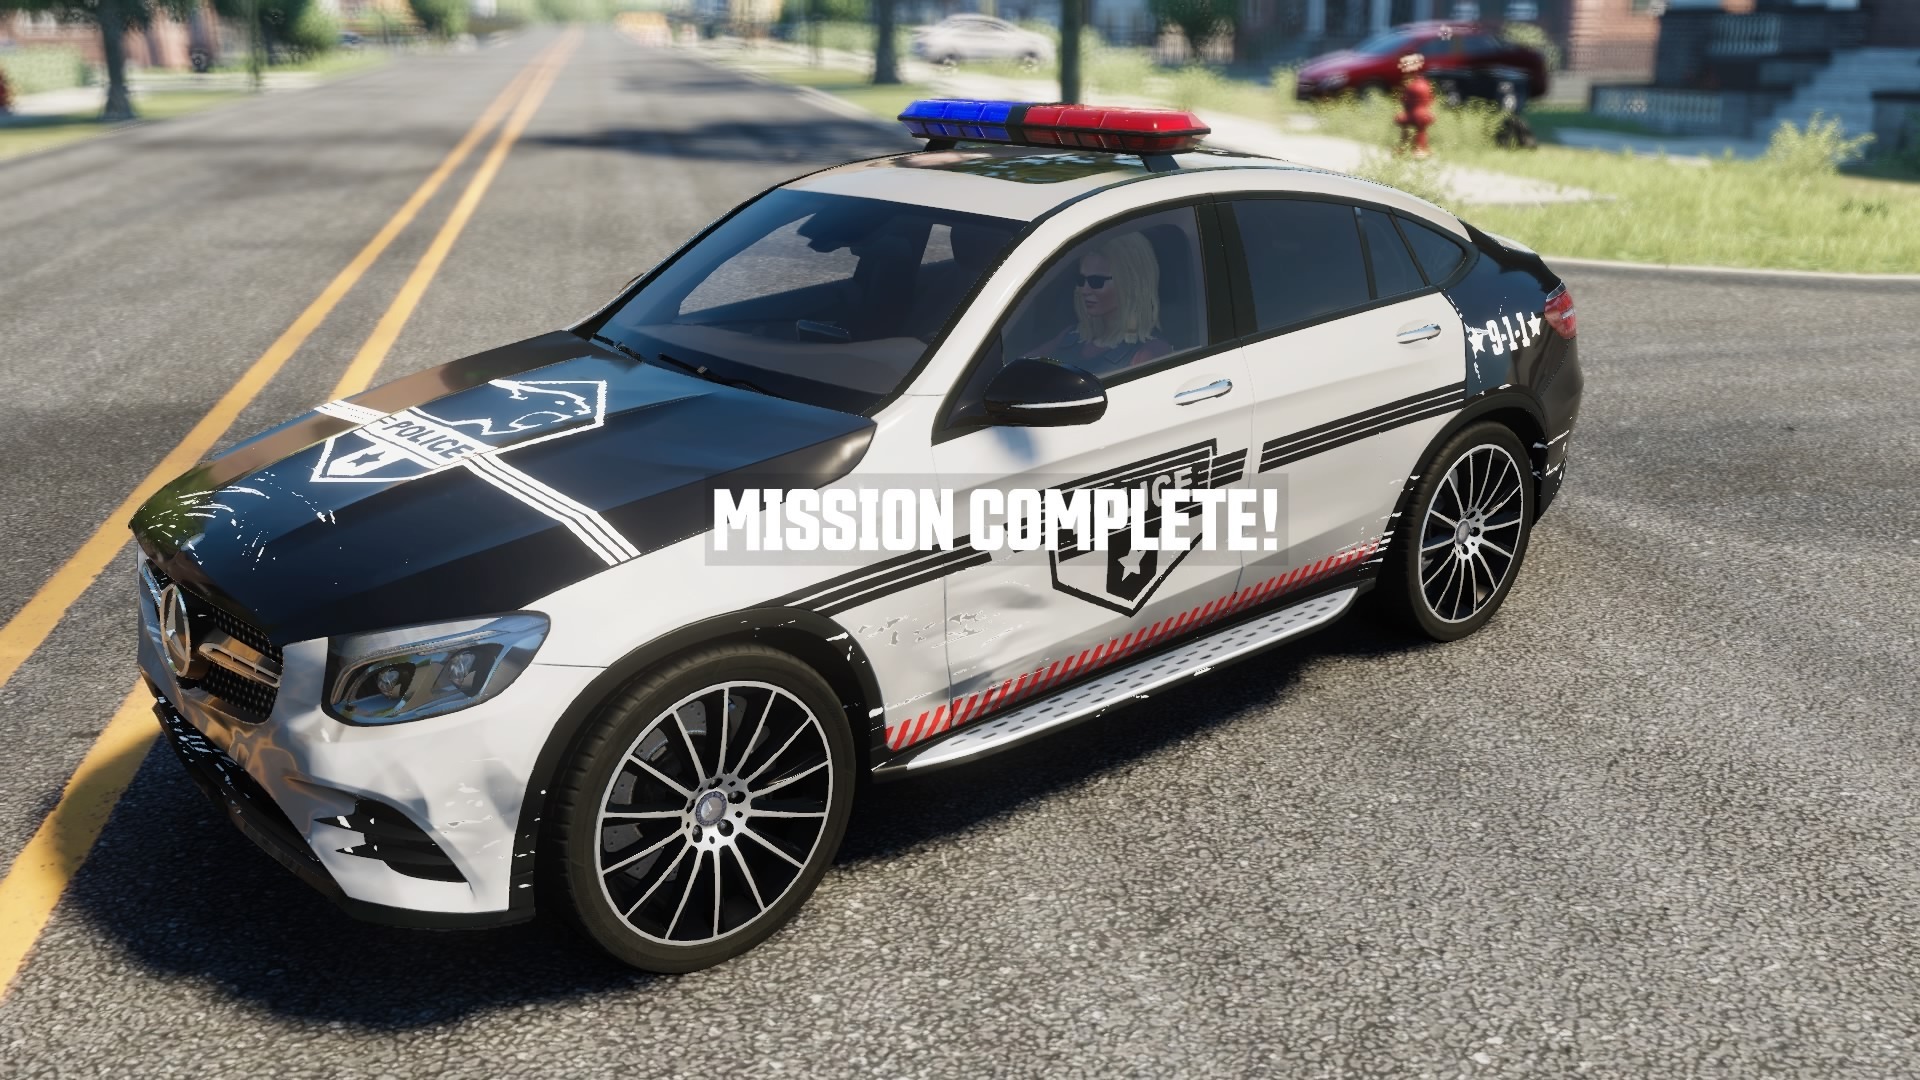 ザ クルー 新拡張 コーリングオールユニット がリリース 警察となり暴走車を追い詰めろ Game Spark 国内 海外ゲーム情報サイト